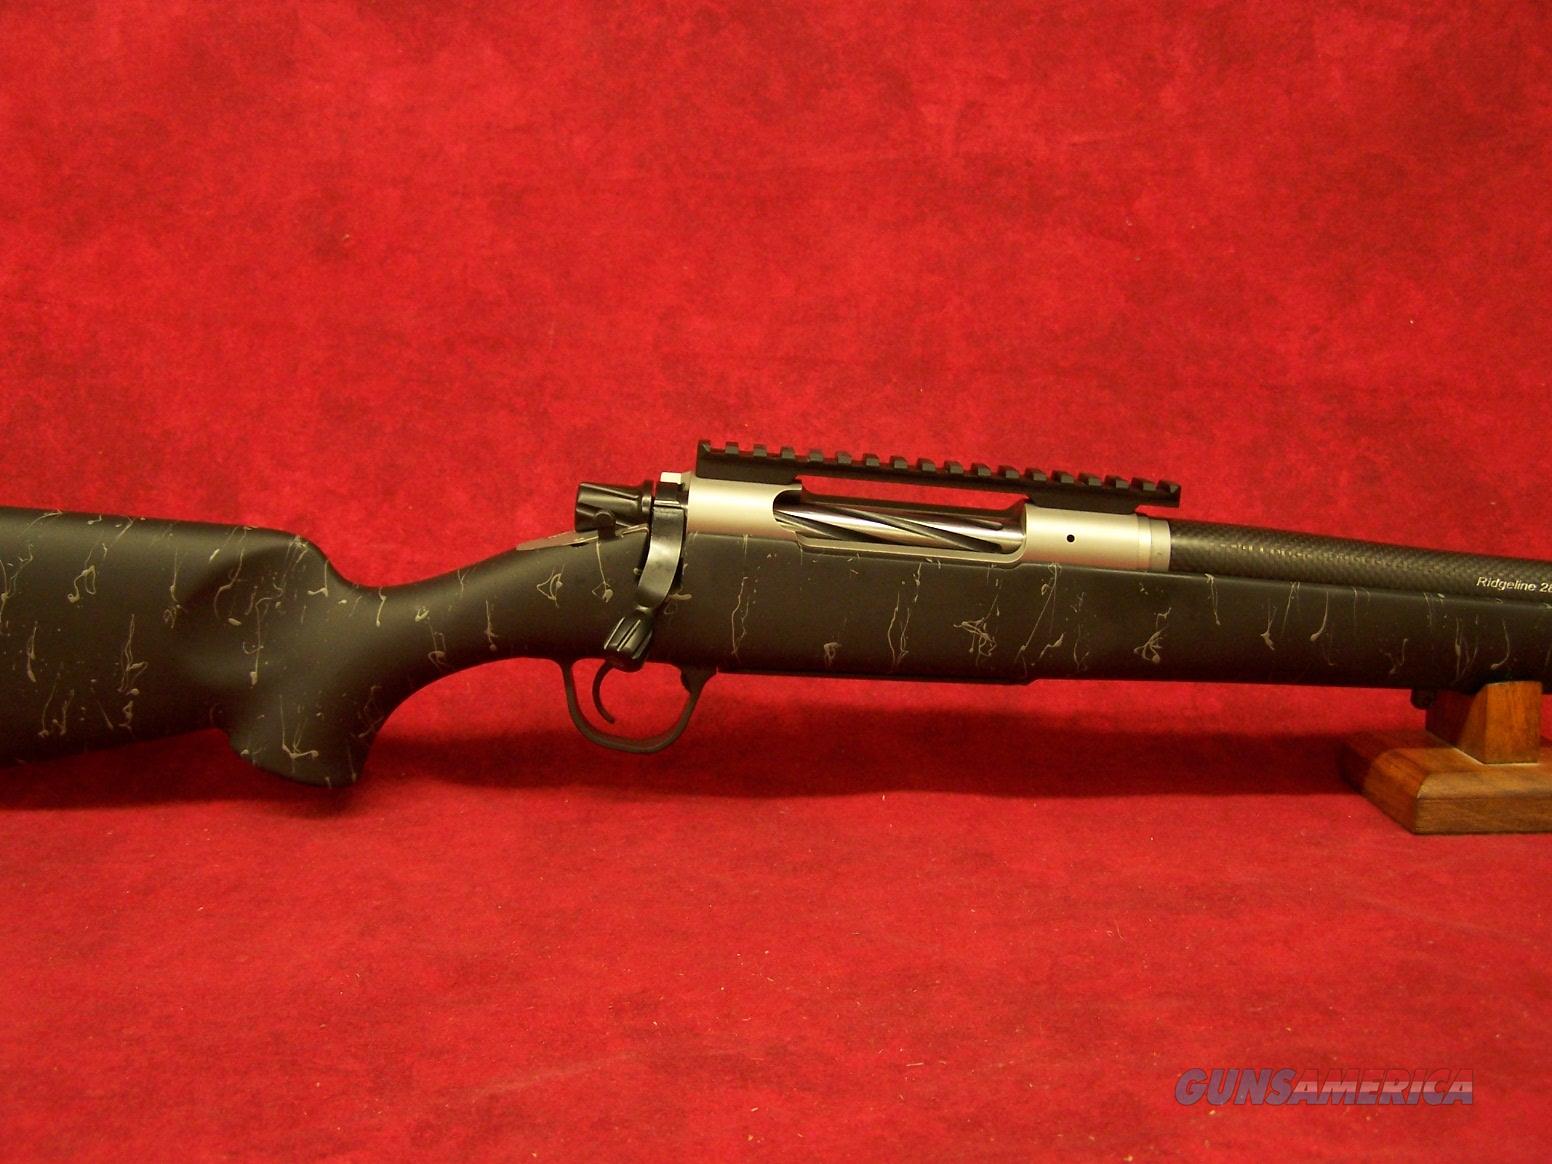 christensen-arms-ridgeline-300-win-mag-26-bla-for-sale